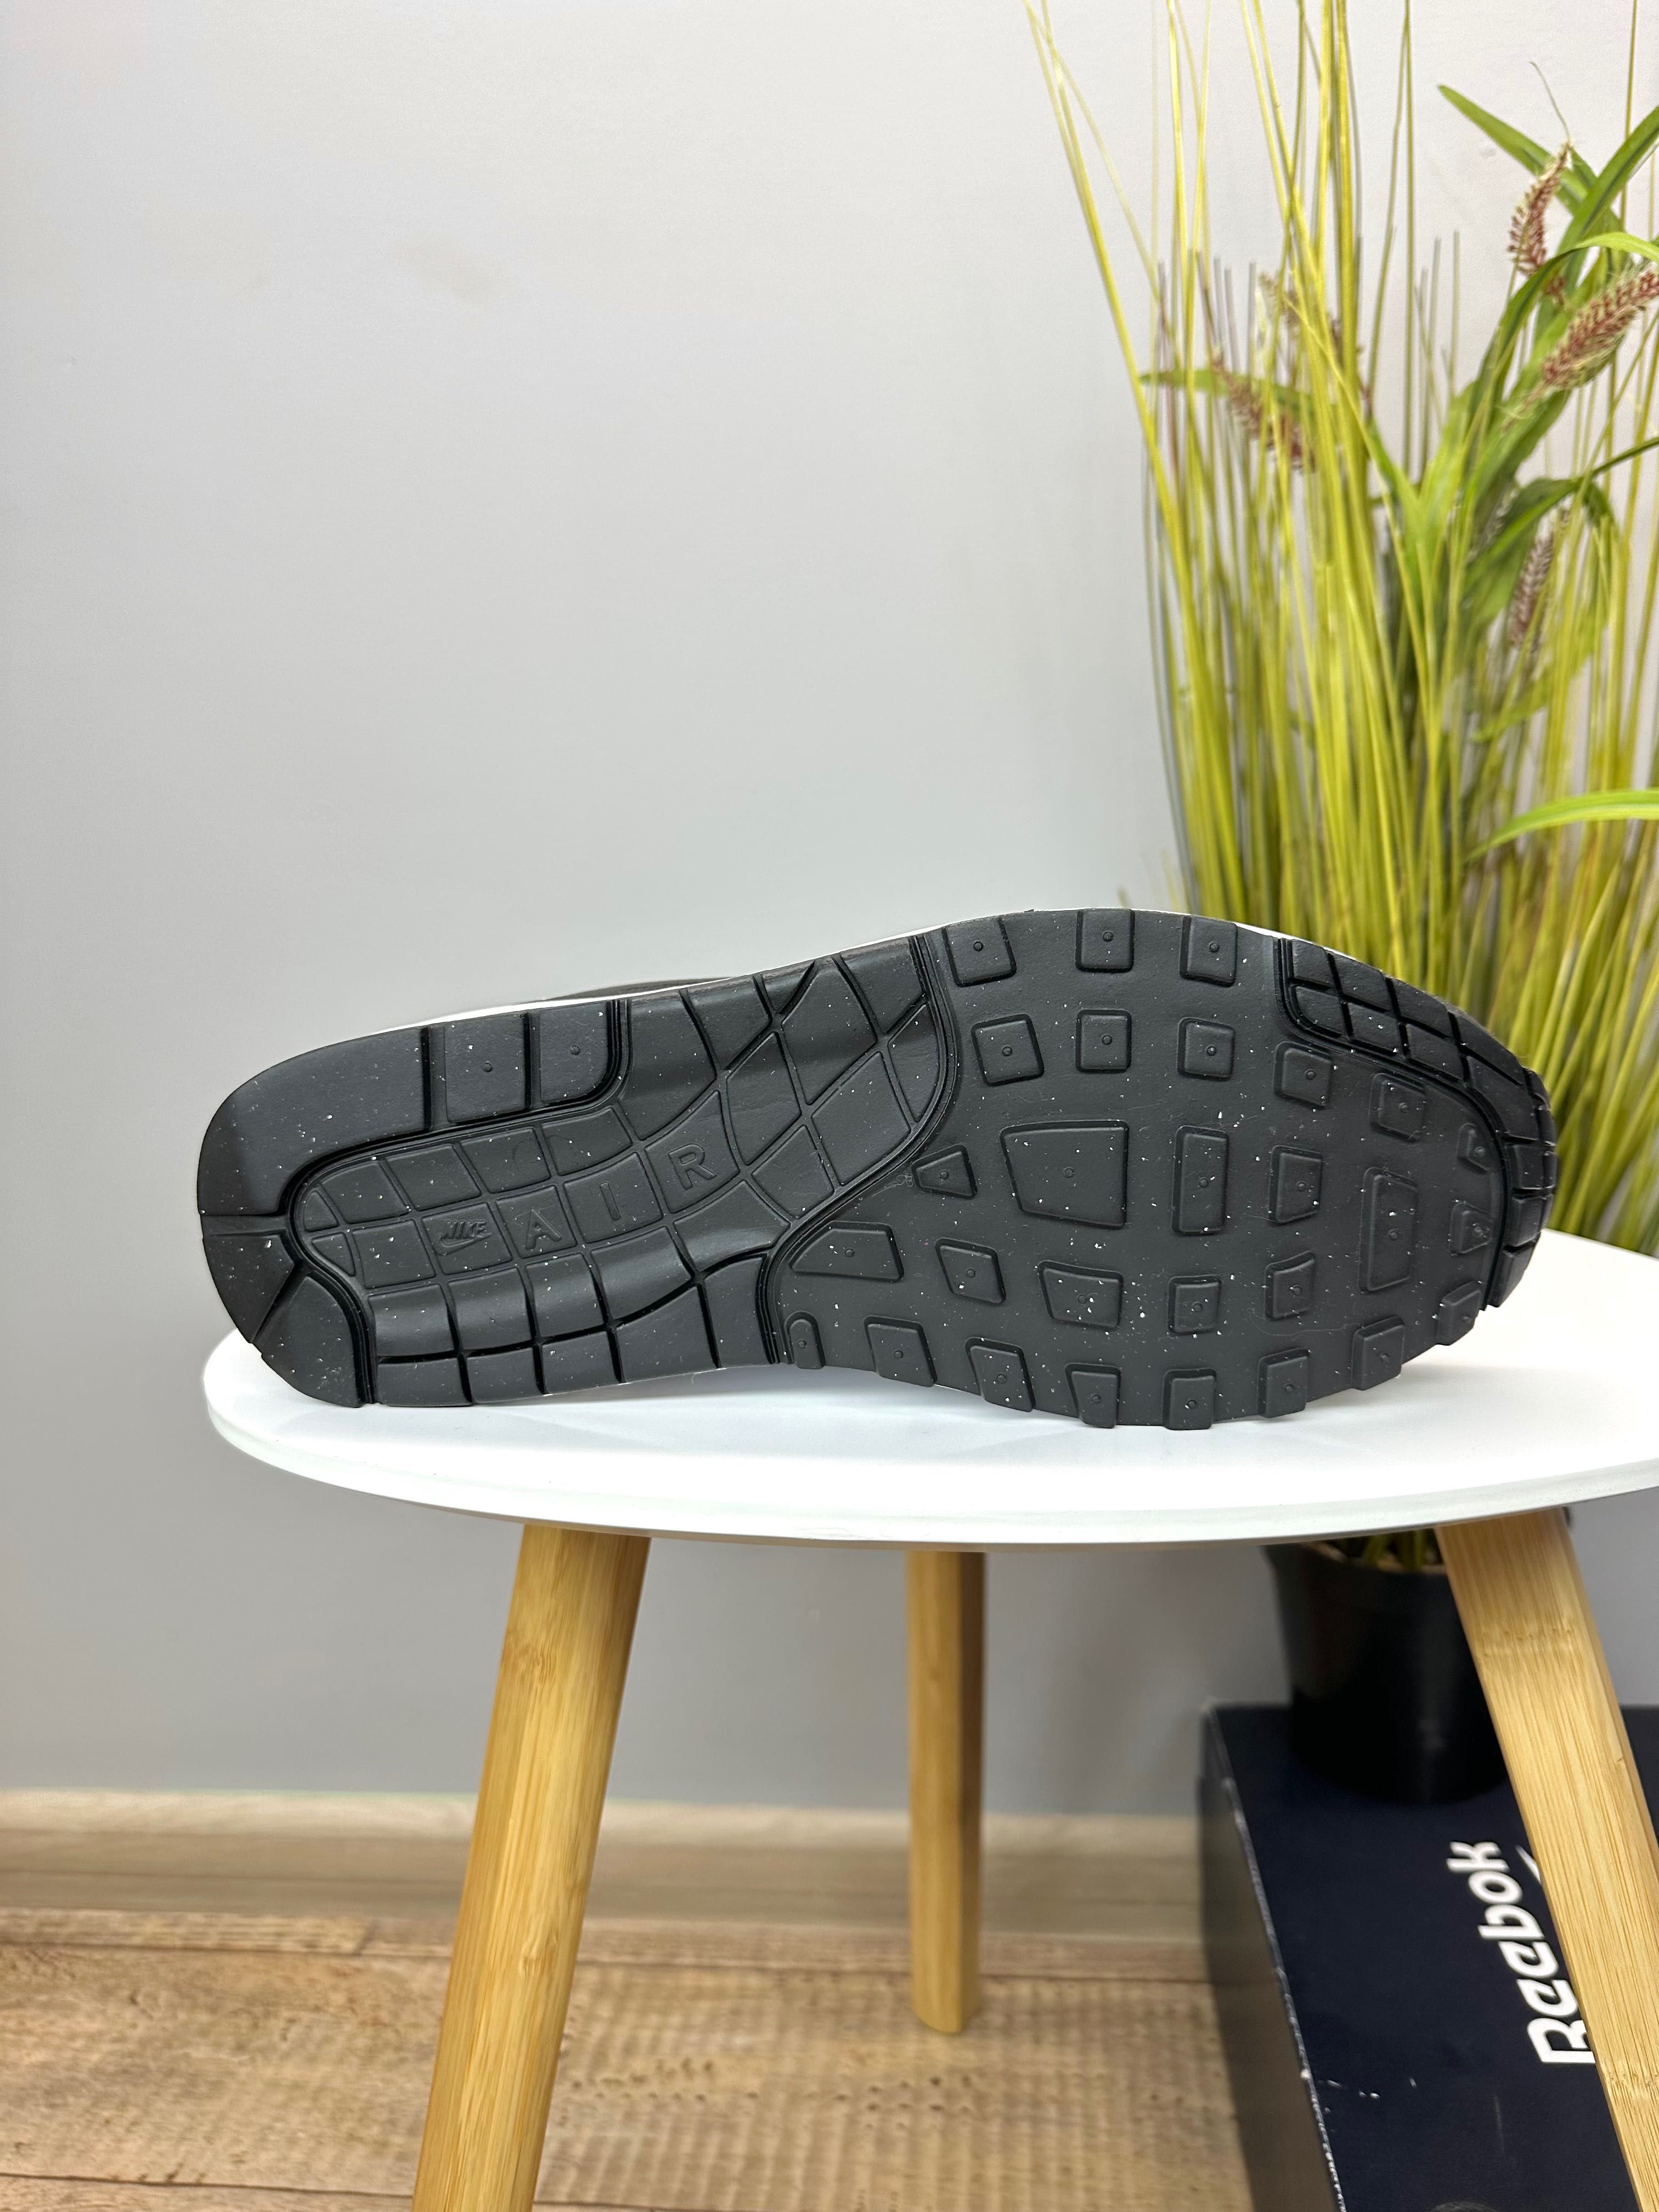 Нові ! Оригінальні кросівки Nike Air Max 1 ( FD9082 107 )